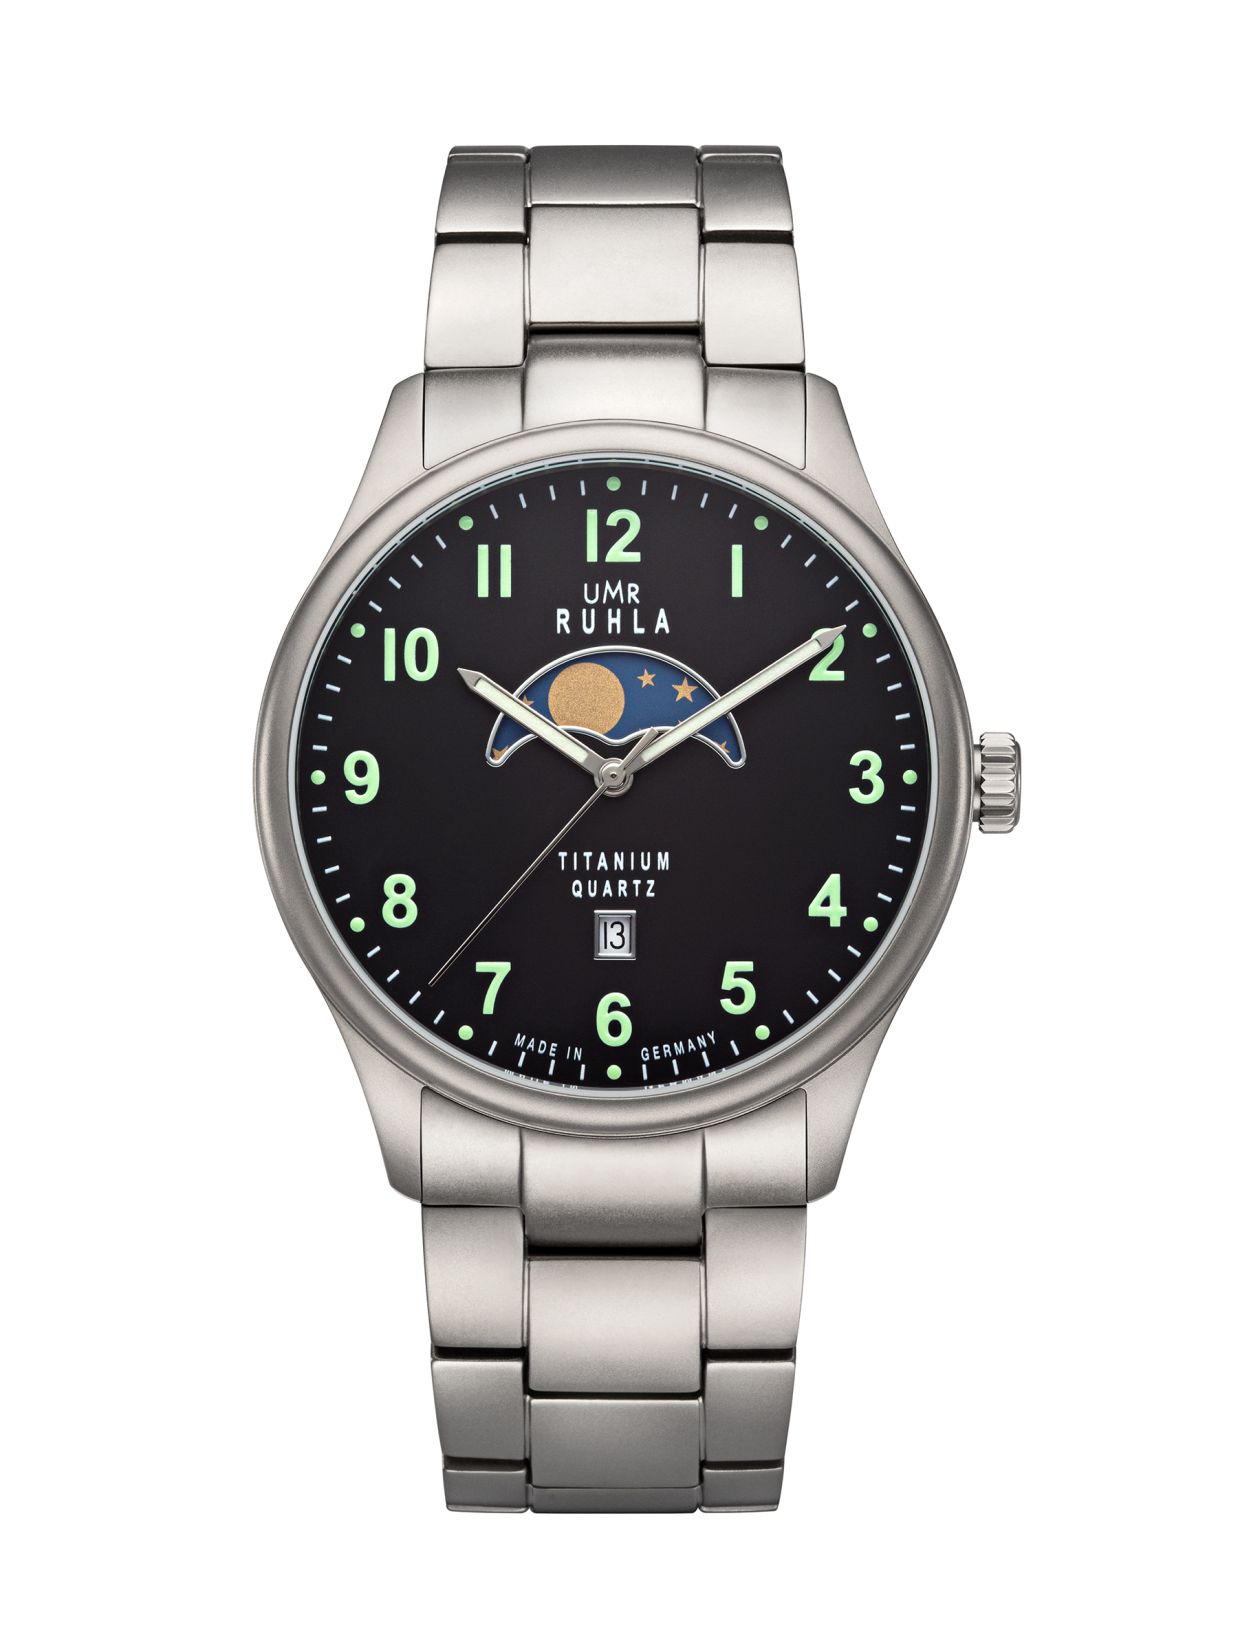 Uhren Manufaktur Ruhla - Mondphase-Uhr - Titan - Leuchtzahlen - Titanband - made in Germany